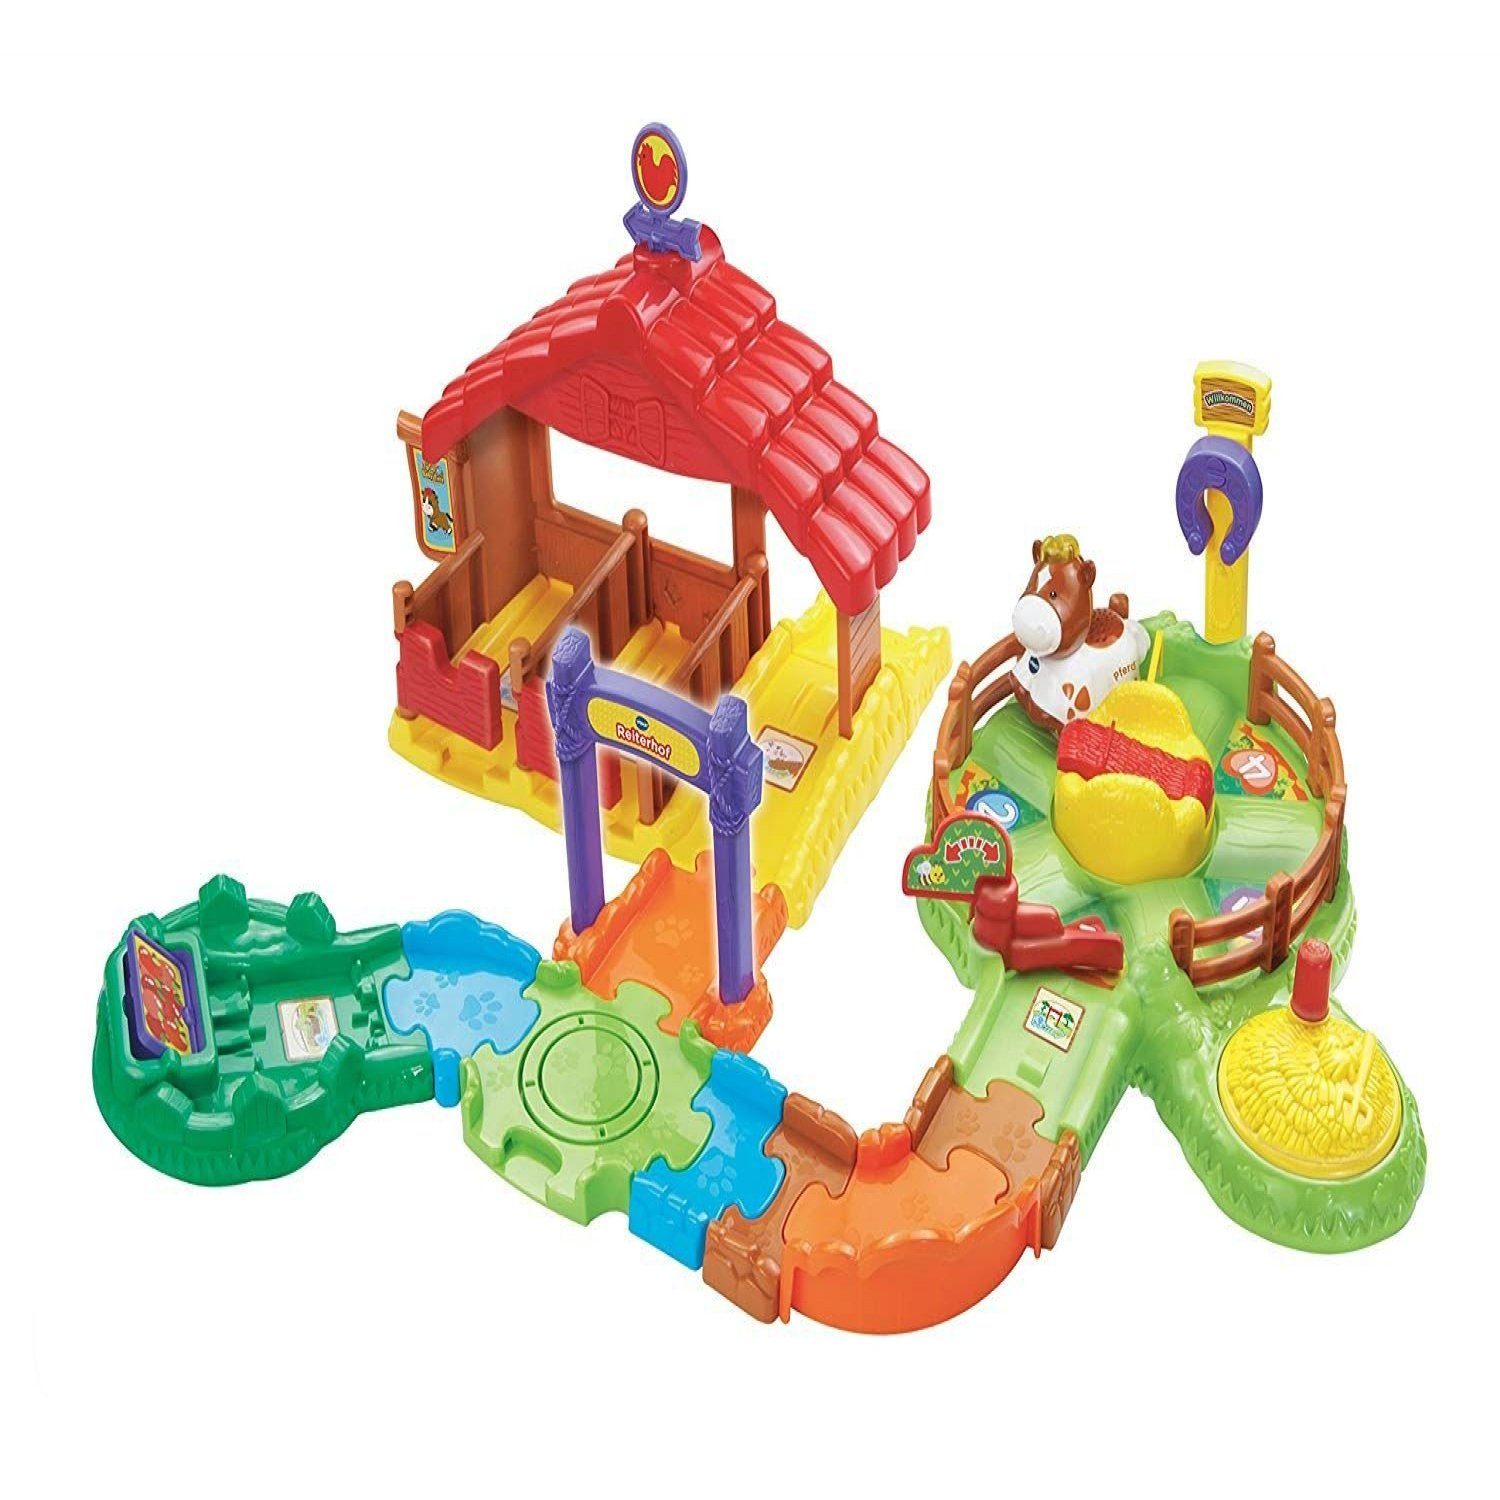 Hängende Spirale Spielzeug mit Tieren Bunte Interaktive Glocke Sound Rasseln Spielzeug zum Aufhängen von Kinderwagen Kinderwagen Autositz Kinderbett